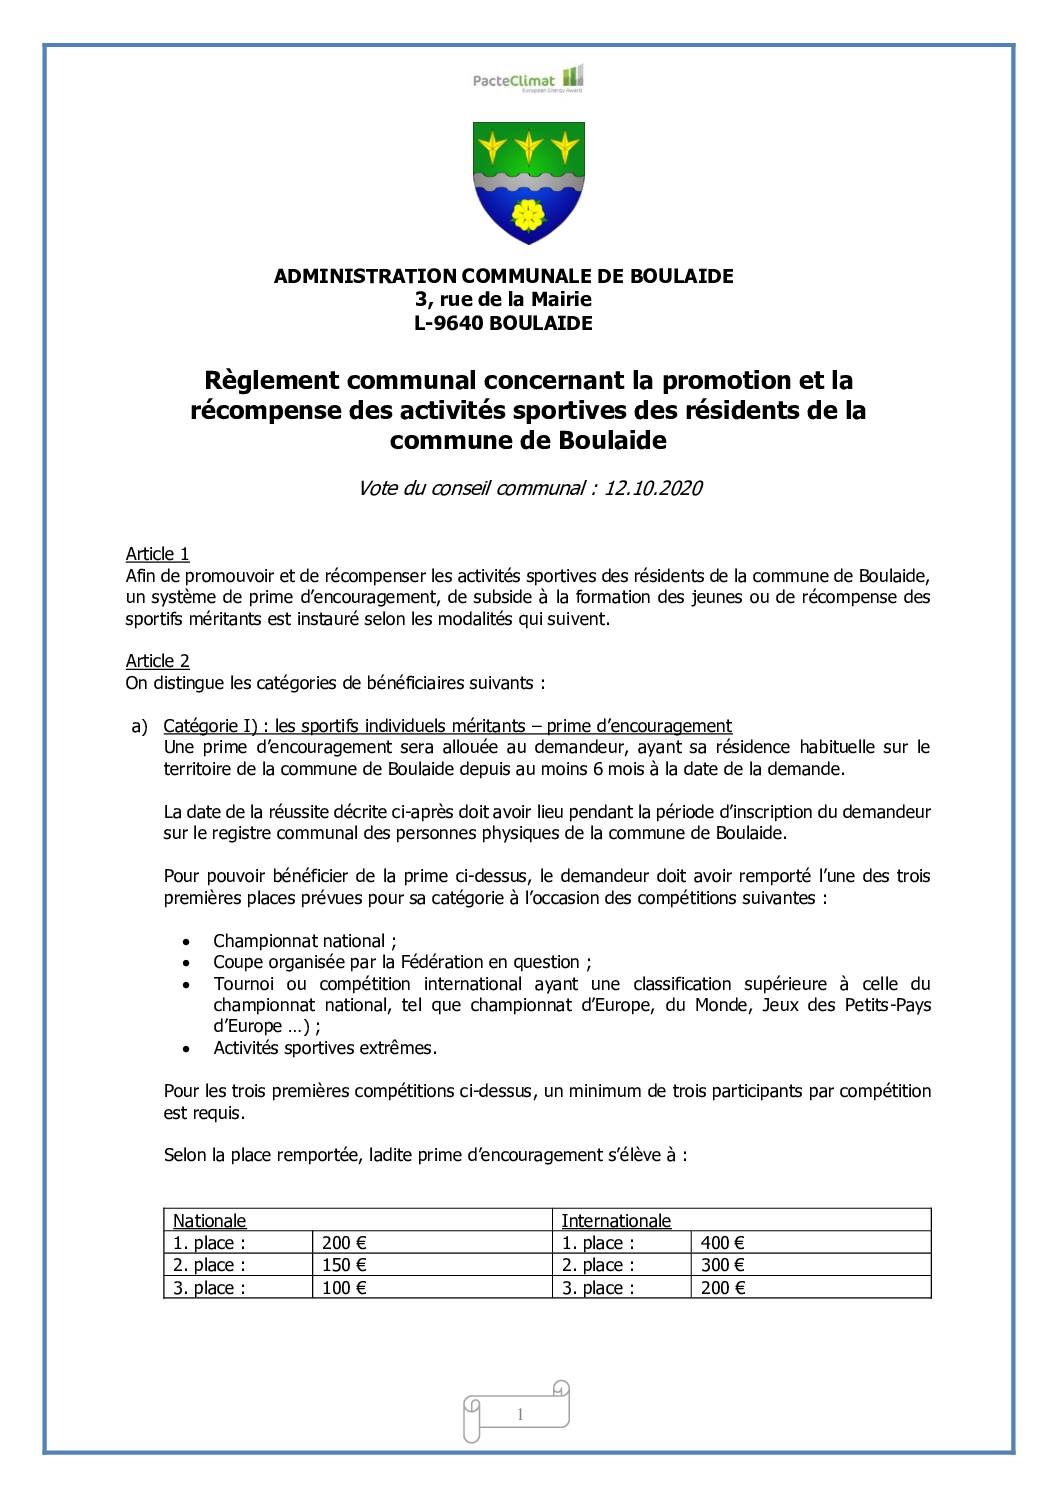 Règlement communal concernant la promotion des activités sportives des résidents de la commune de Boulaide du 12.10.2020